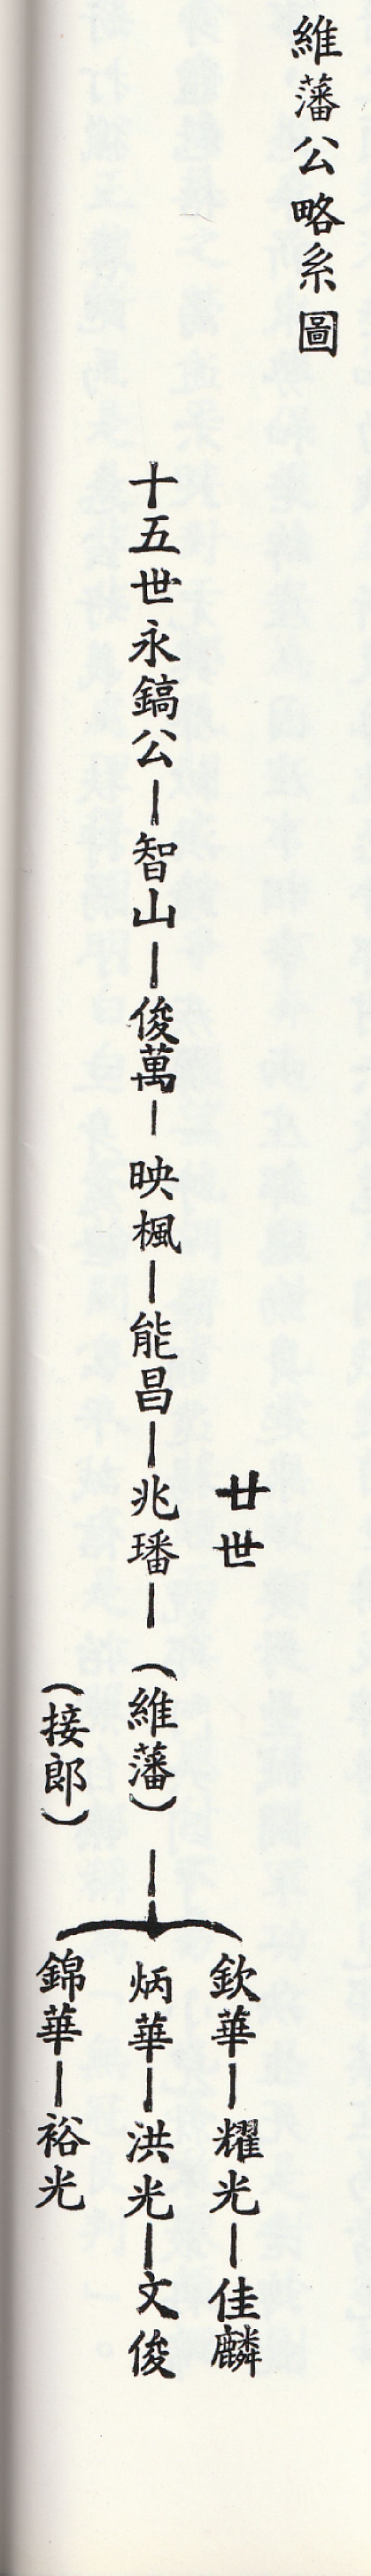 十五世來臺祖邱永鎬公派下族譜》（1992）所錄〈維藩公略系圖〉-客家雲 